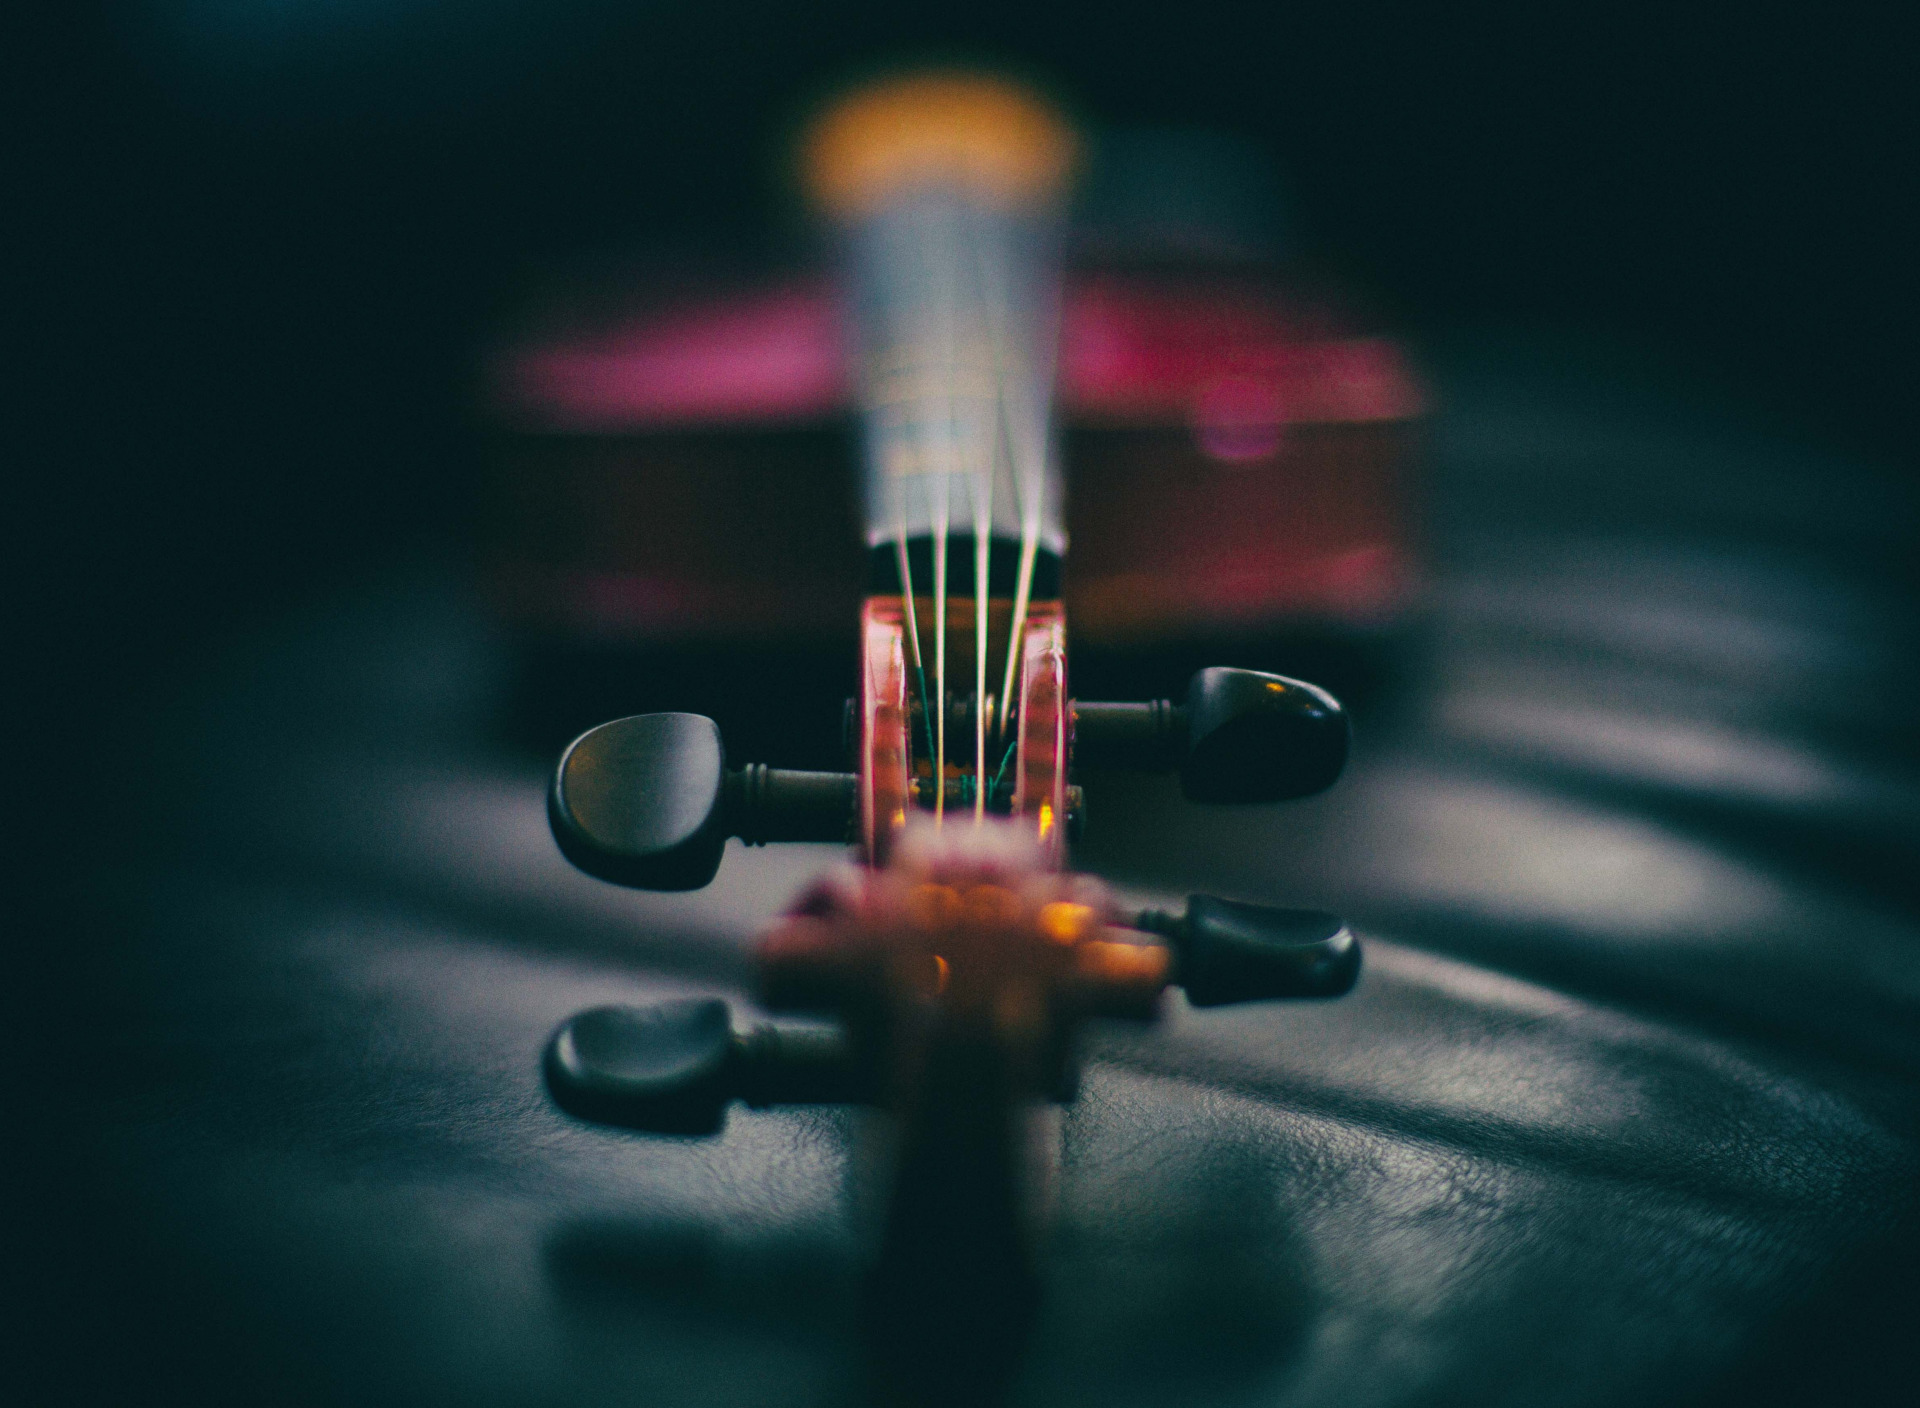 Violin instruments. Музыкальная абстракция. Музыкальные инструменты фон. Красивые музыкальные инструменты. 4 Музыкальных инструмента.